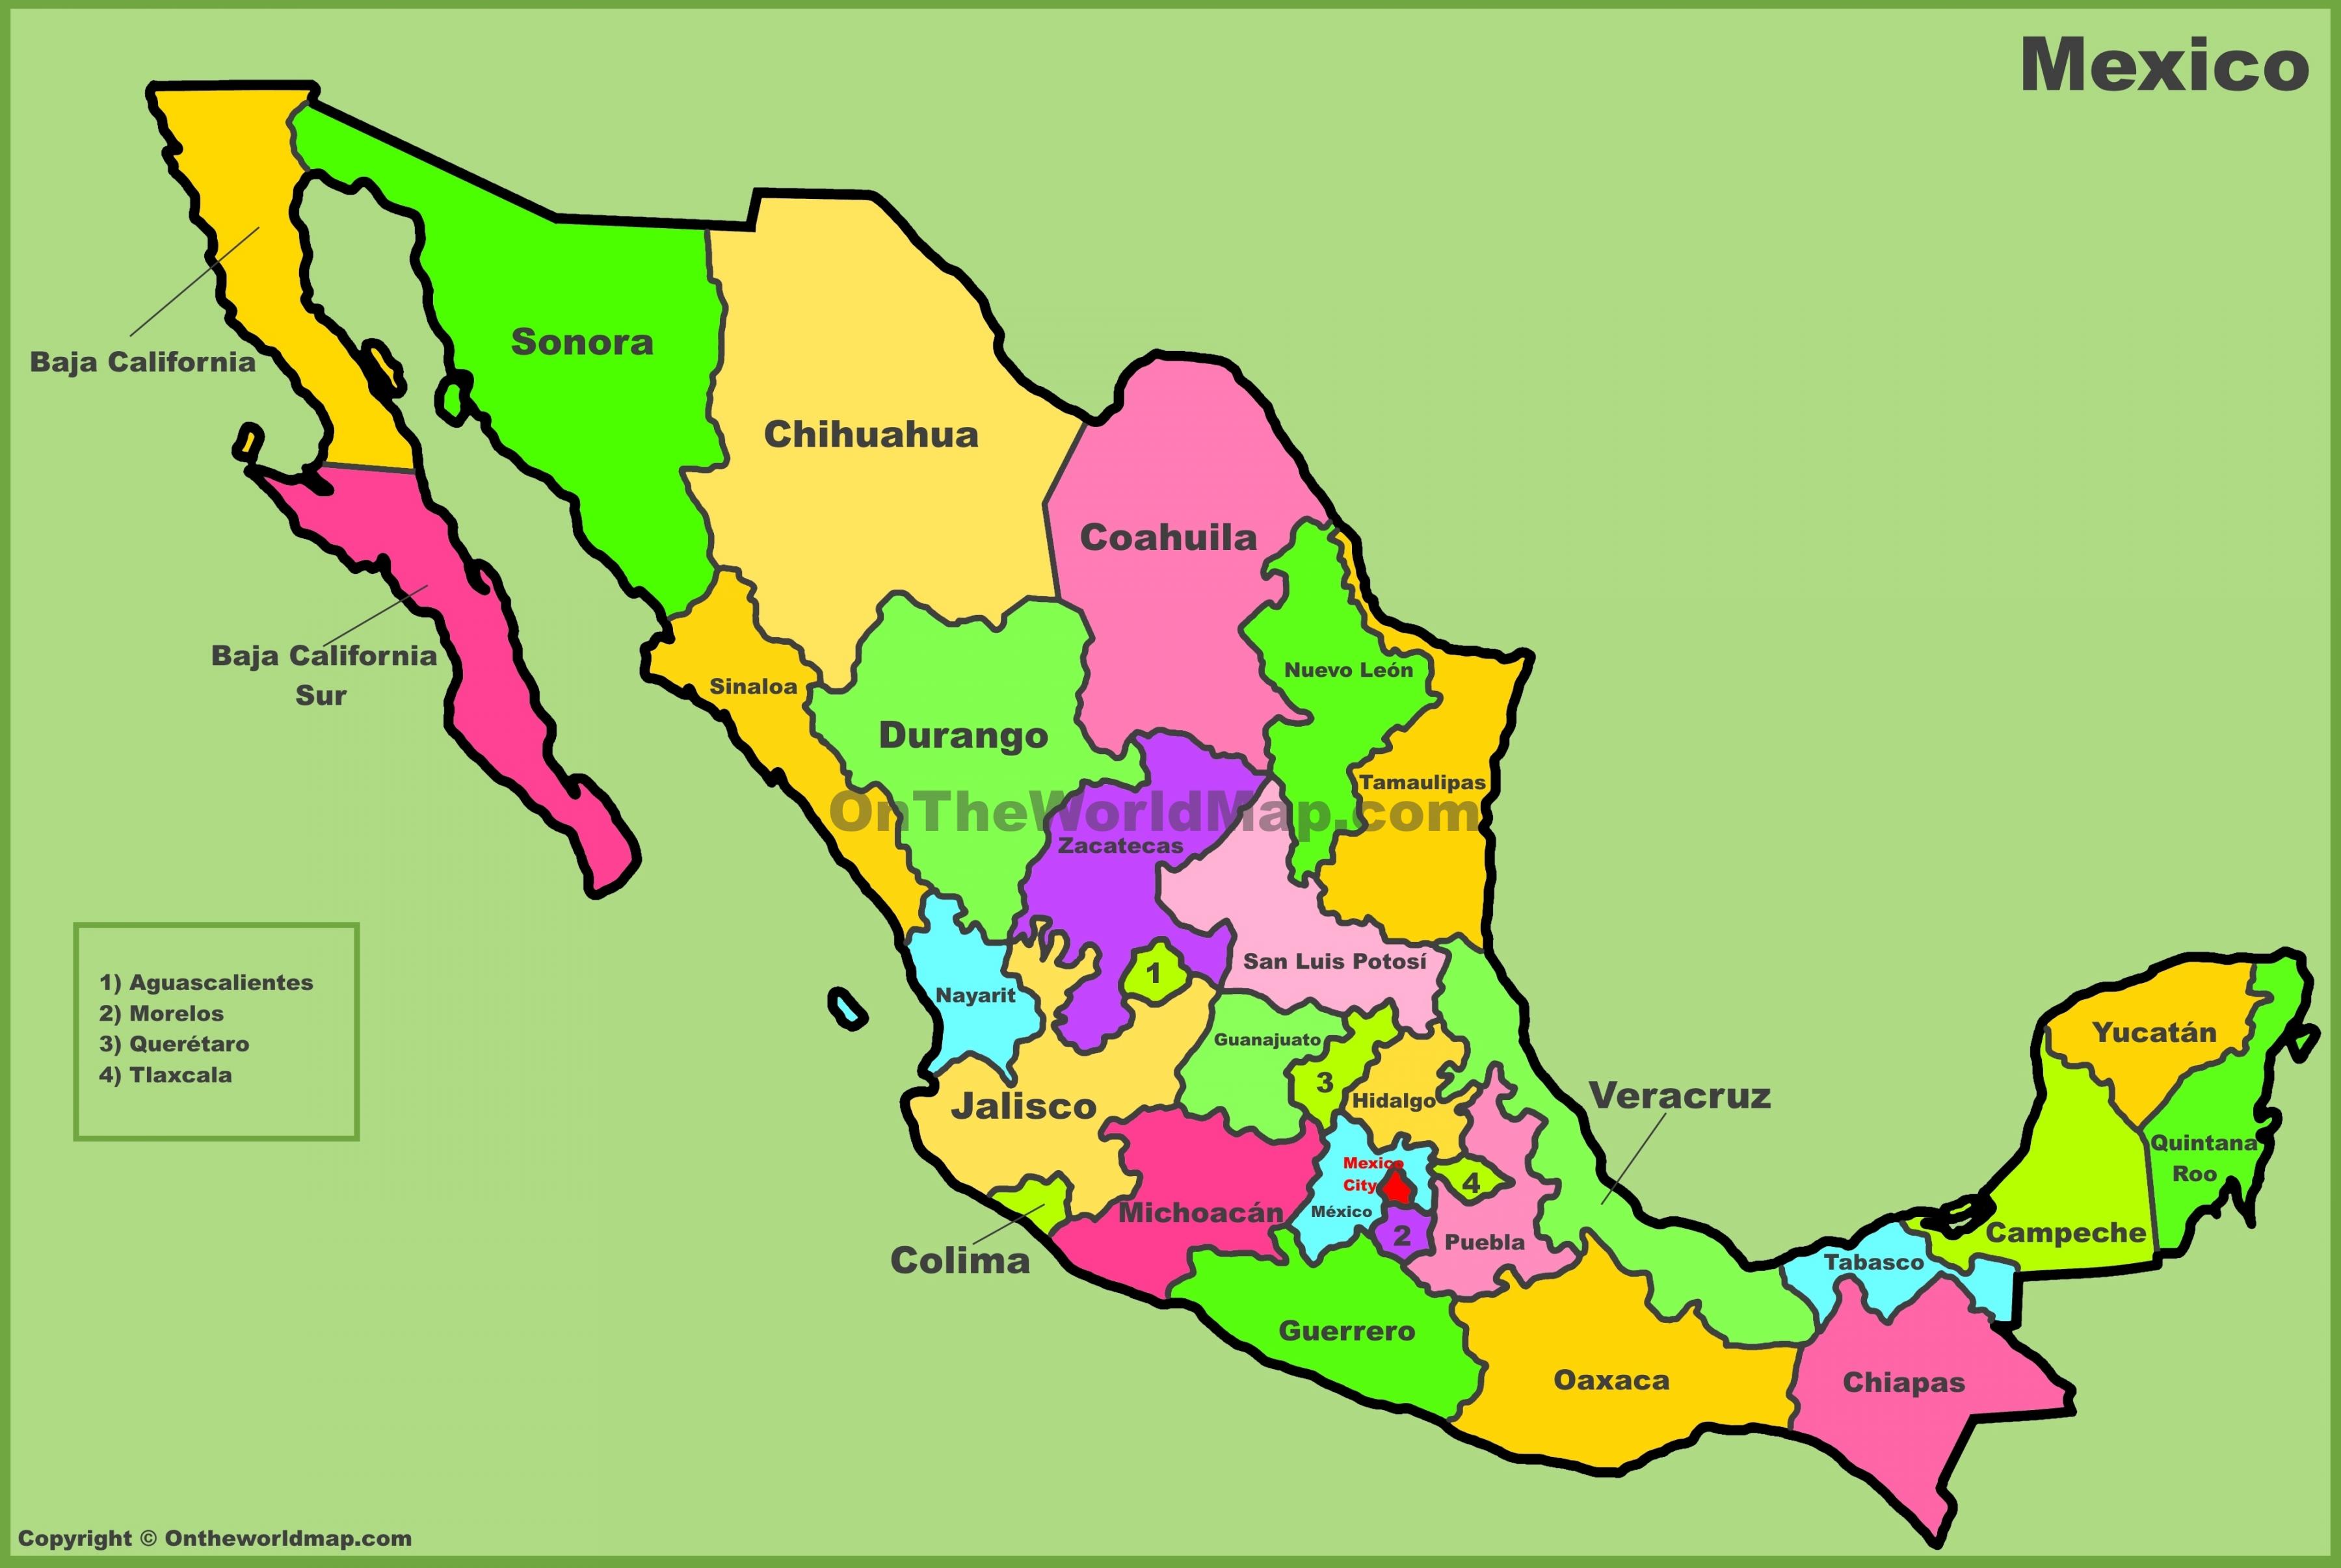 Tìm hiểu về thông tin địa ốc Mexico với Địa Ốc Thông Thái. Chúng tôi cung cấp thông tin chính xác và đầy đủ về thị trường bất động sản Mexico để giúp bạn đưa ra quyết định đầu tư thông minh.